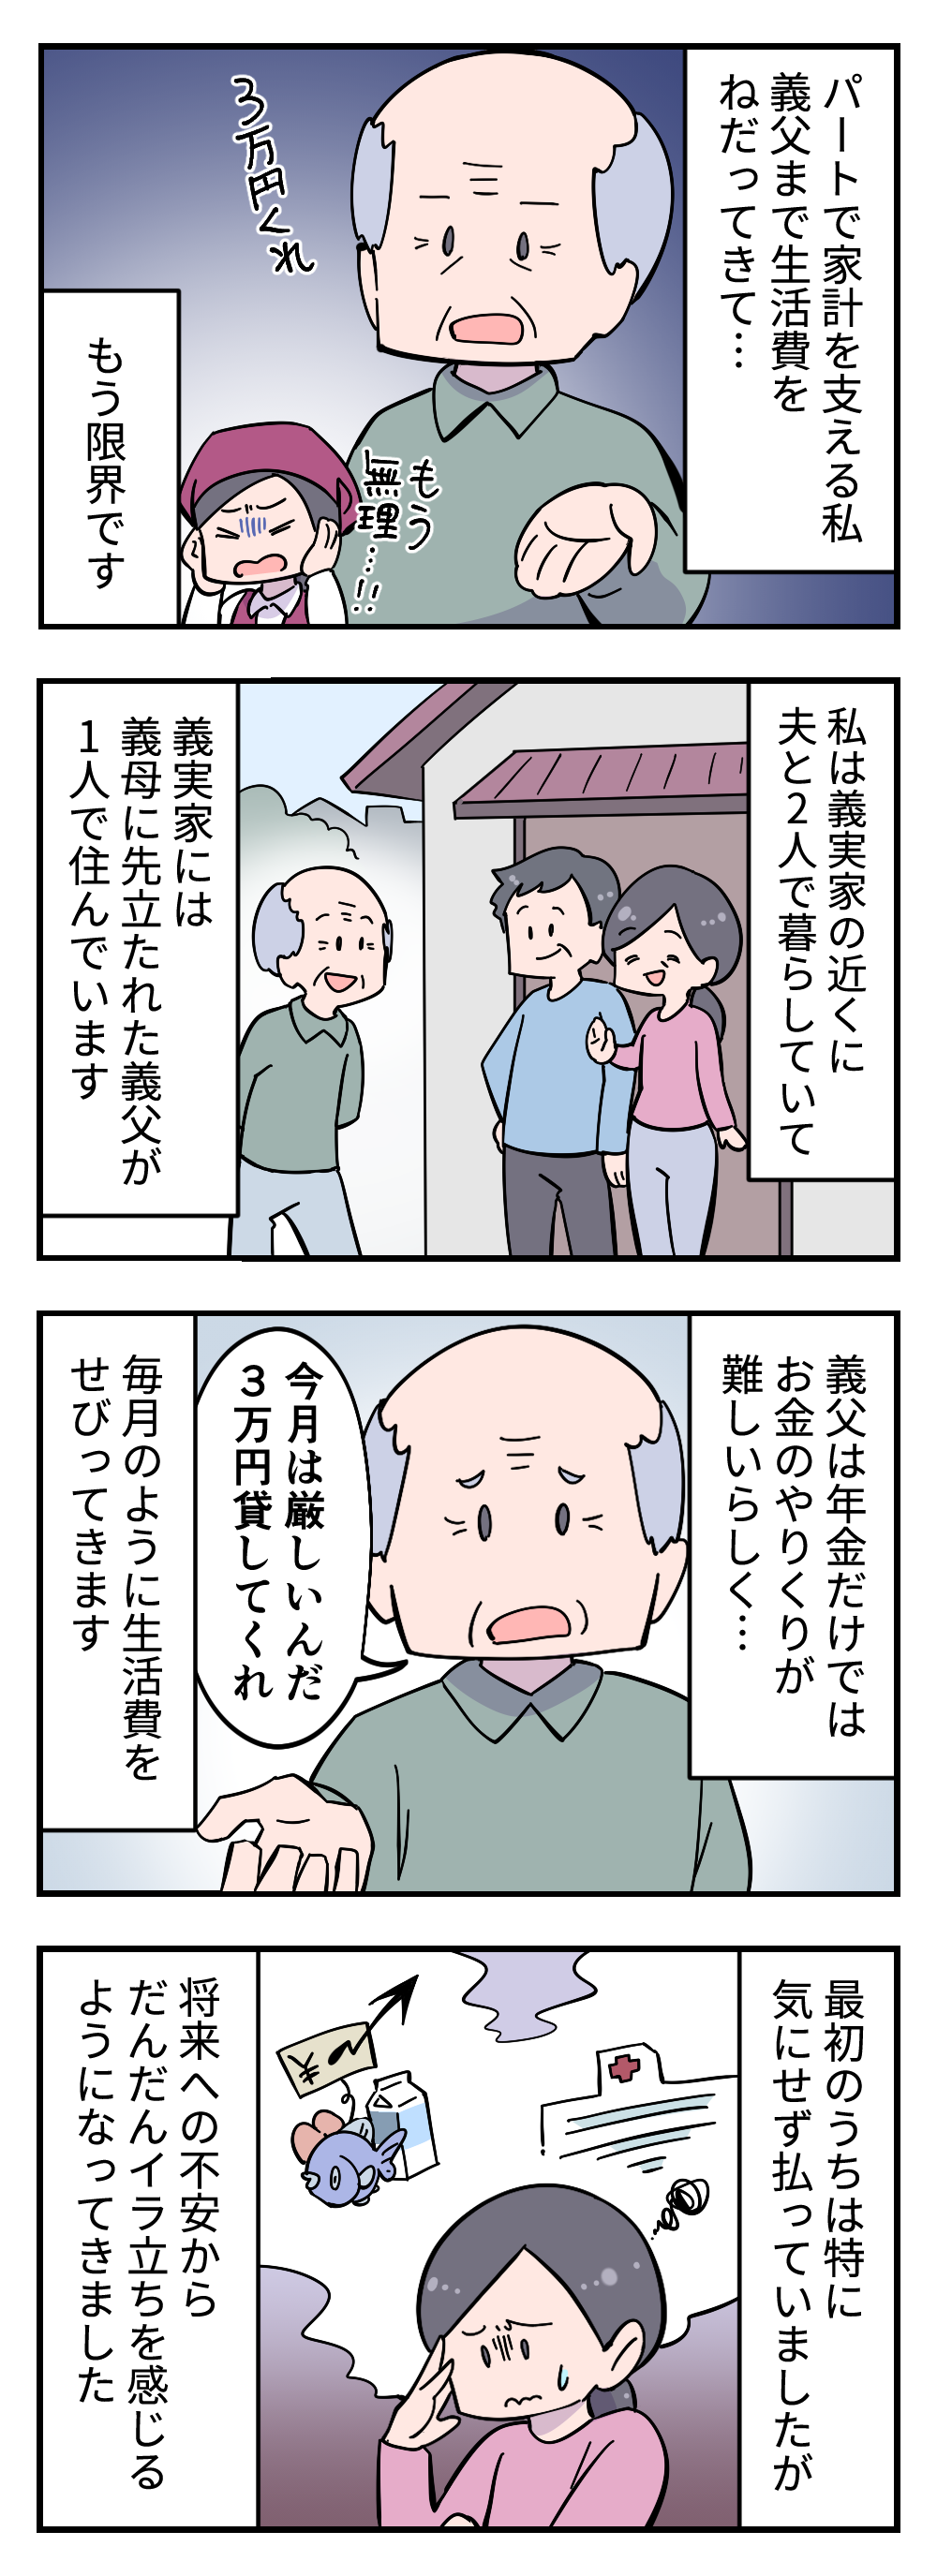 【漫画】「3万円貸してくれ」無職の夫とパートの私。そんな我が家に生活費をせがむ義父＜前編＞ 412_001.png